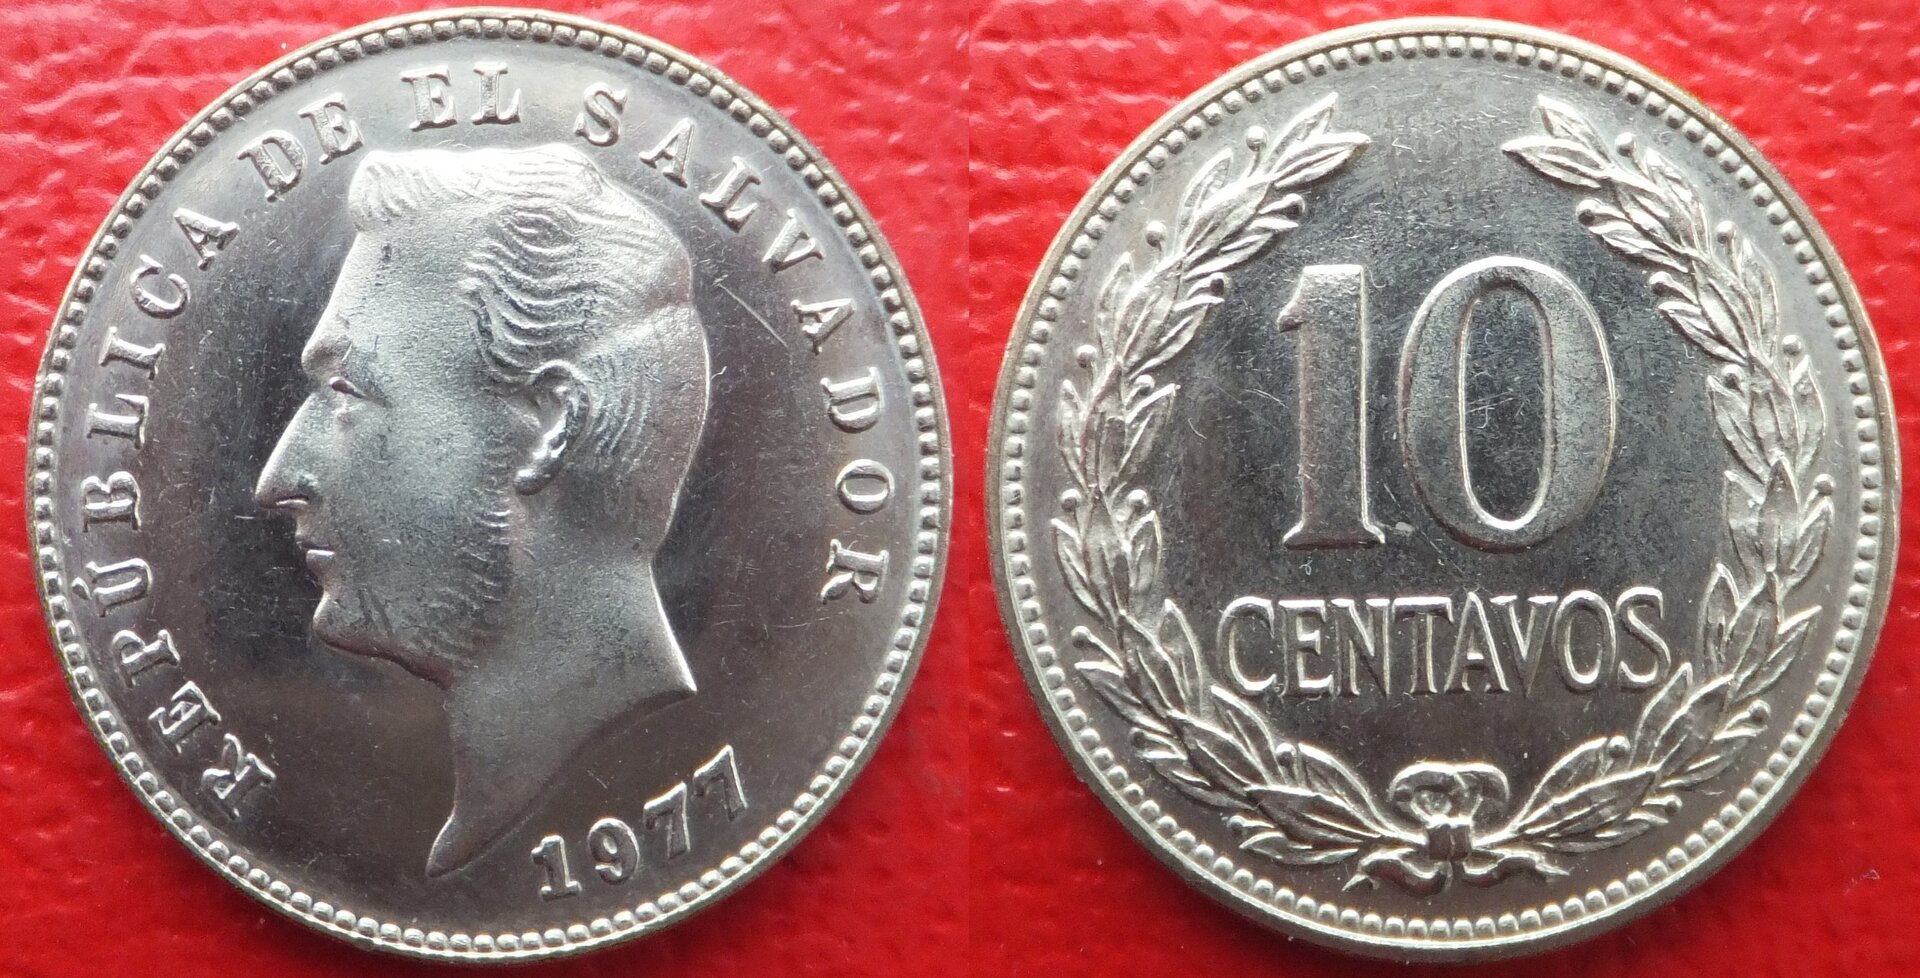 El Salvador 10 centavos 1977 (3).jpg